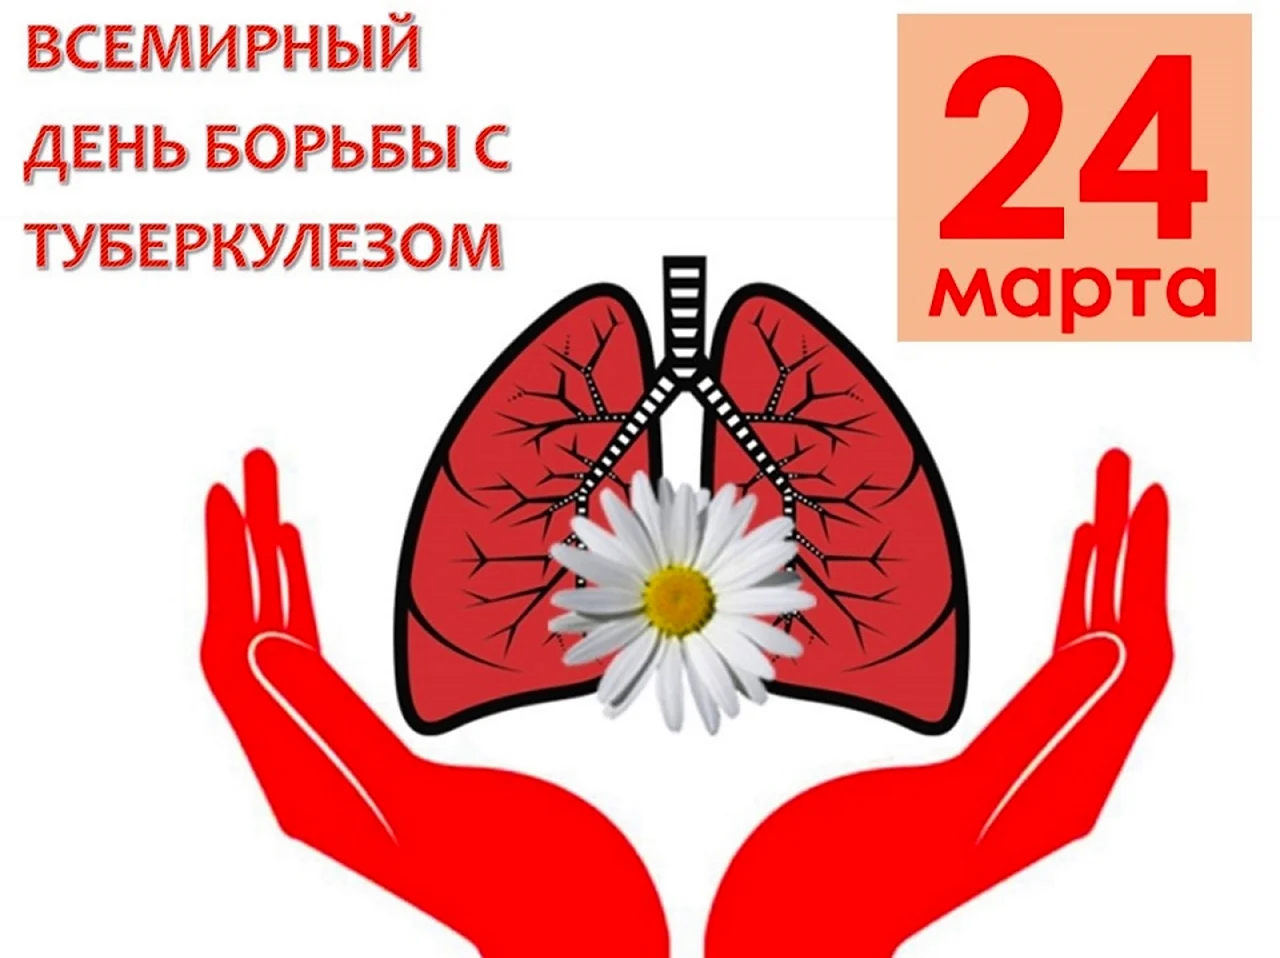 Всемирный день борьбы с туберкулезом. Поздравление